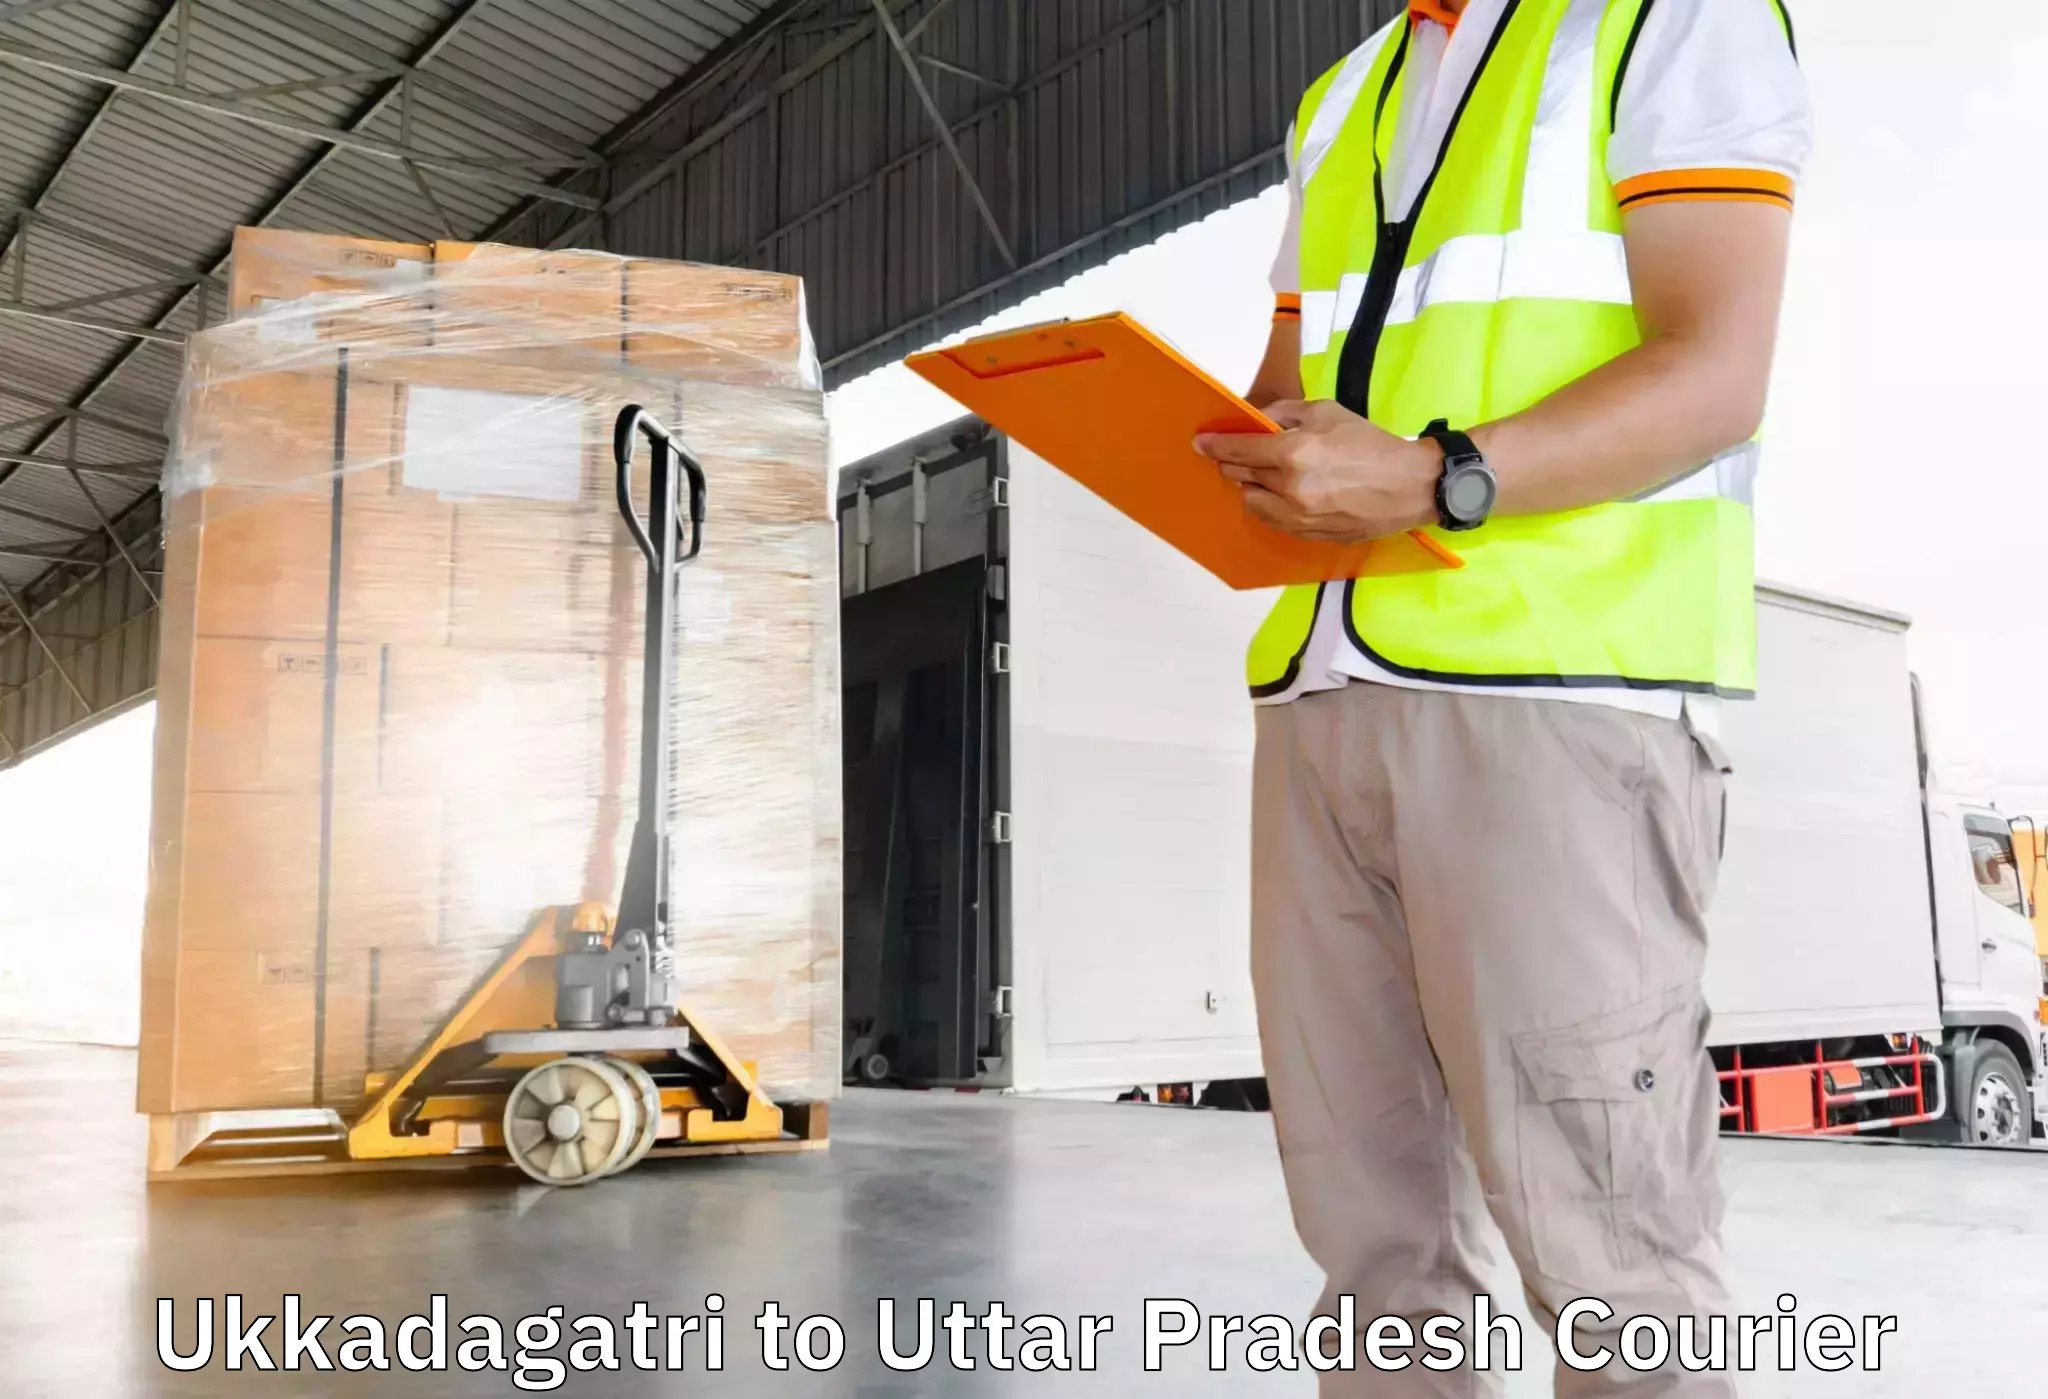 Skilled furniture movers Ukkadagatri to Khaga